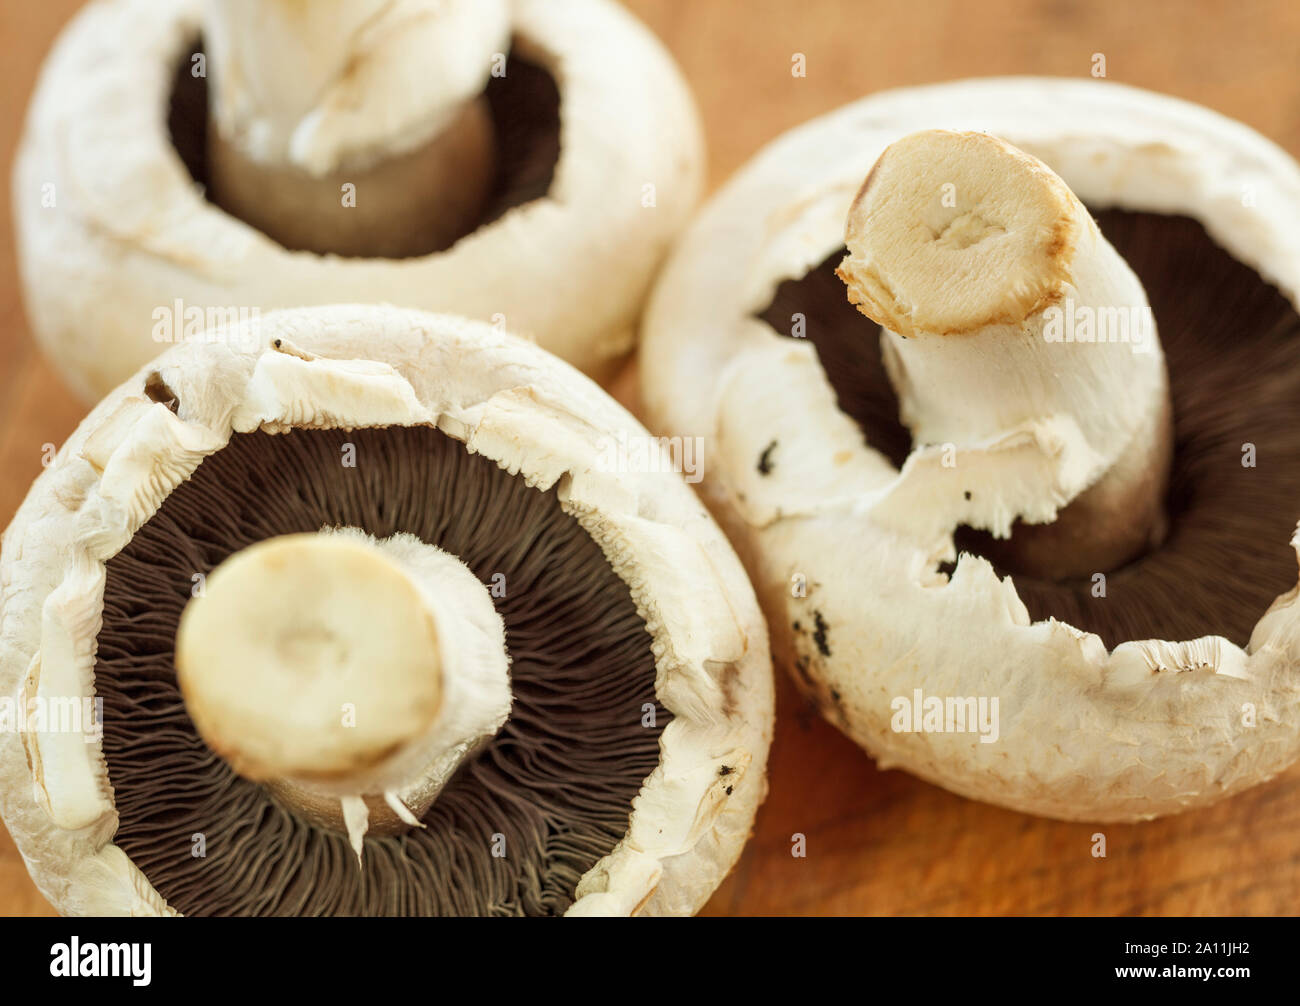 Funghi close up su una superficie in legno Foto Stock